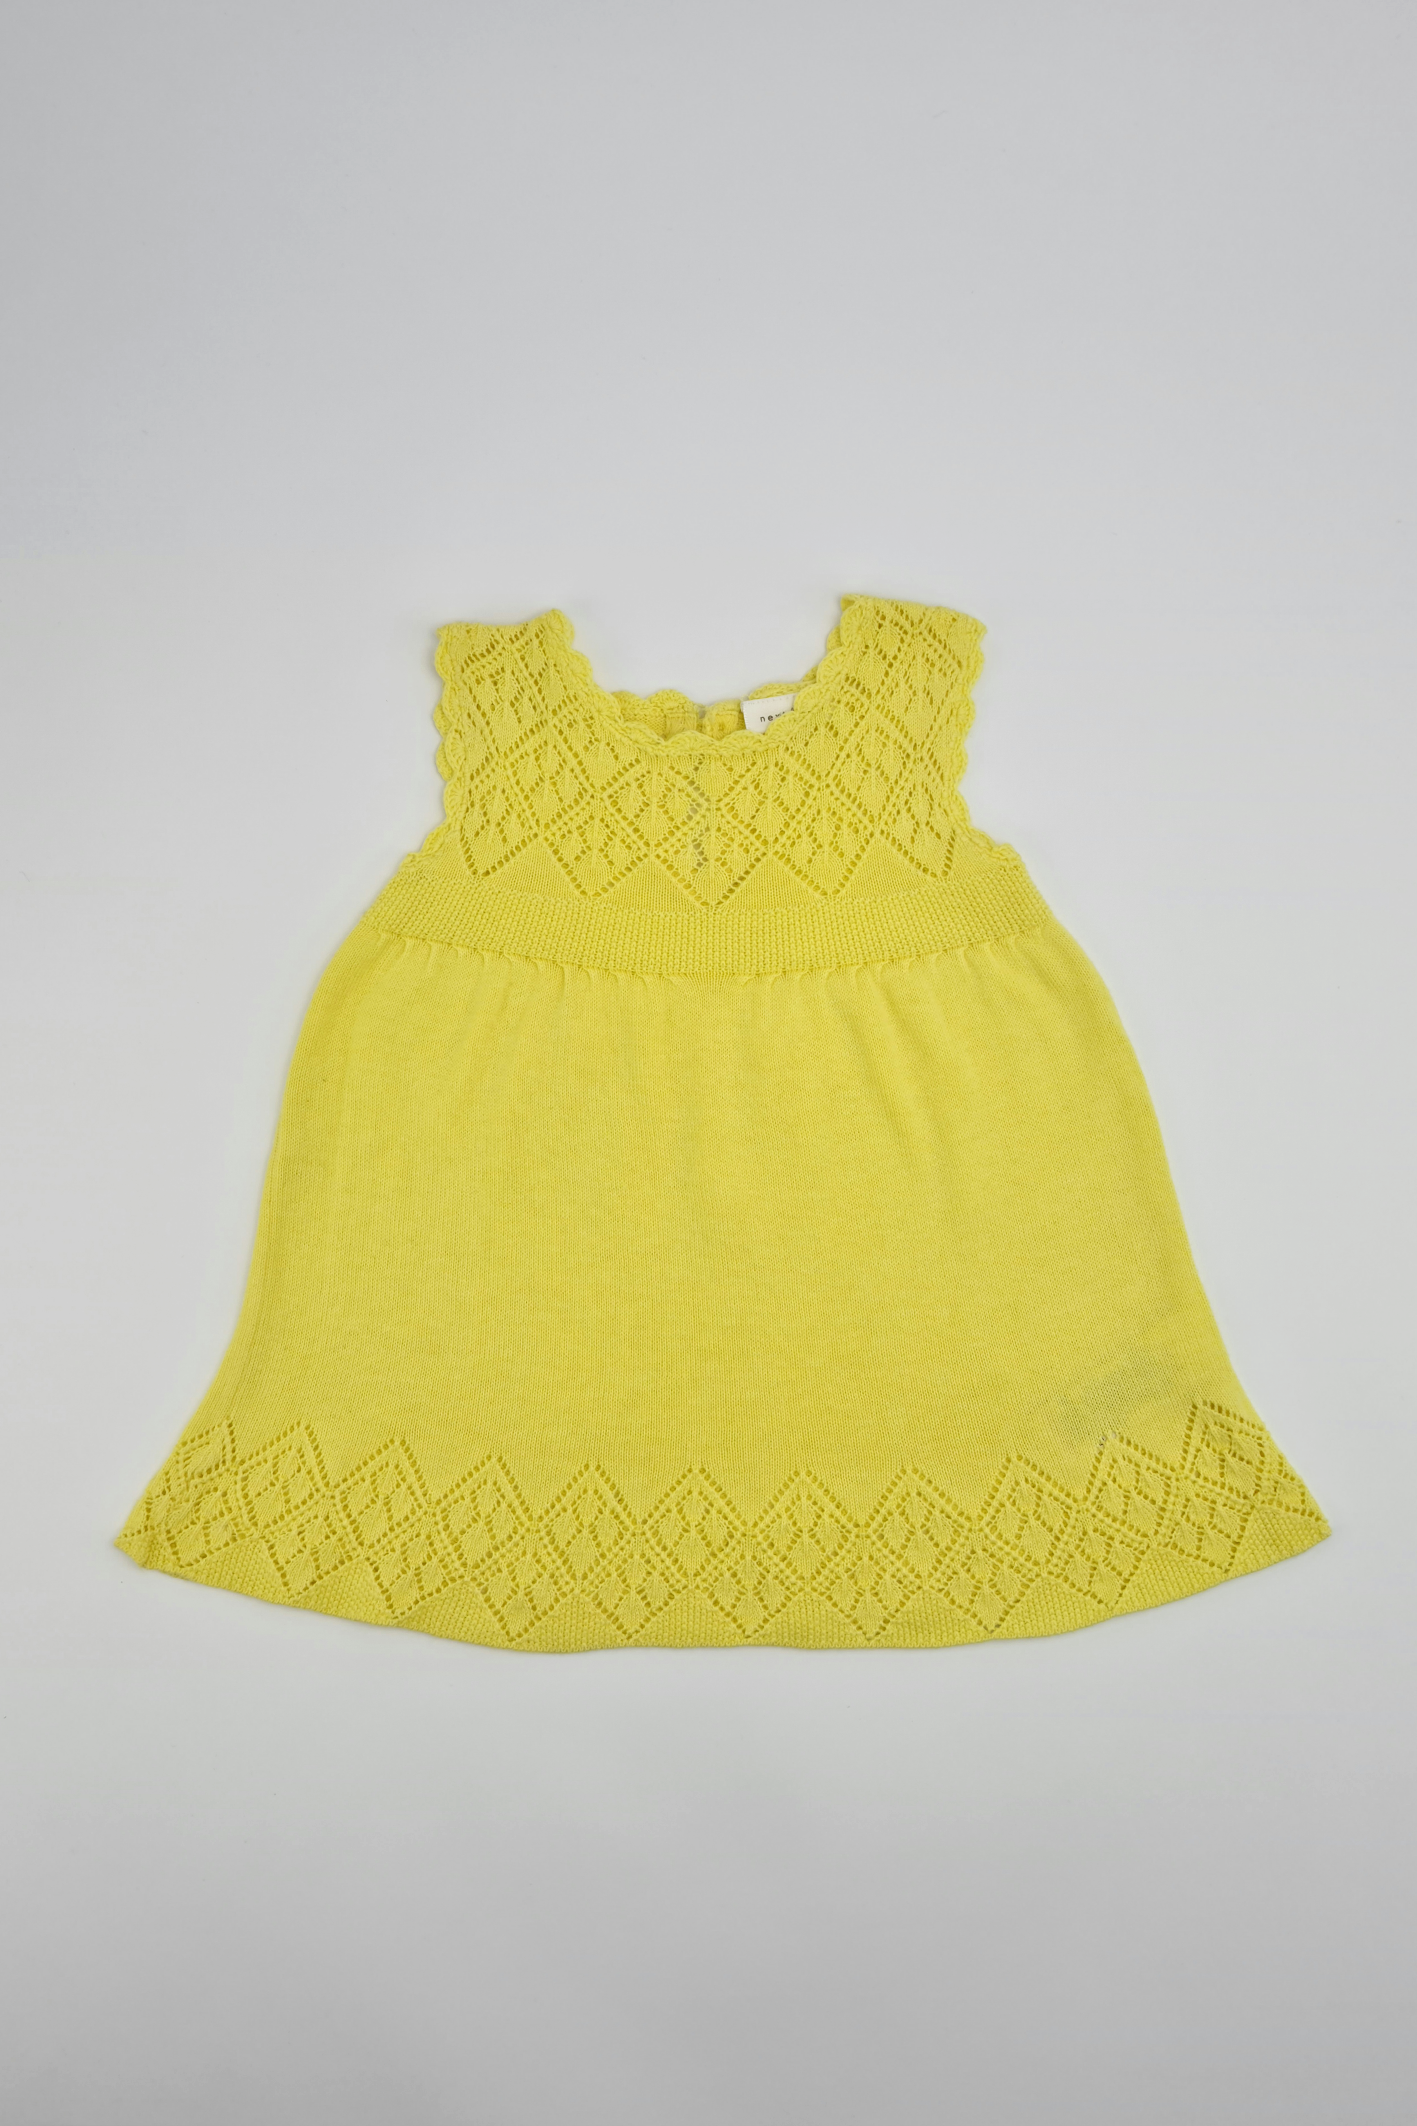 Lace Pattern Dress - Precuddled.com